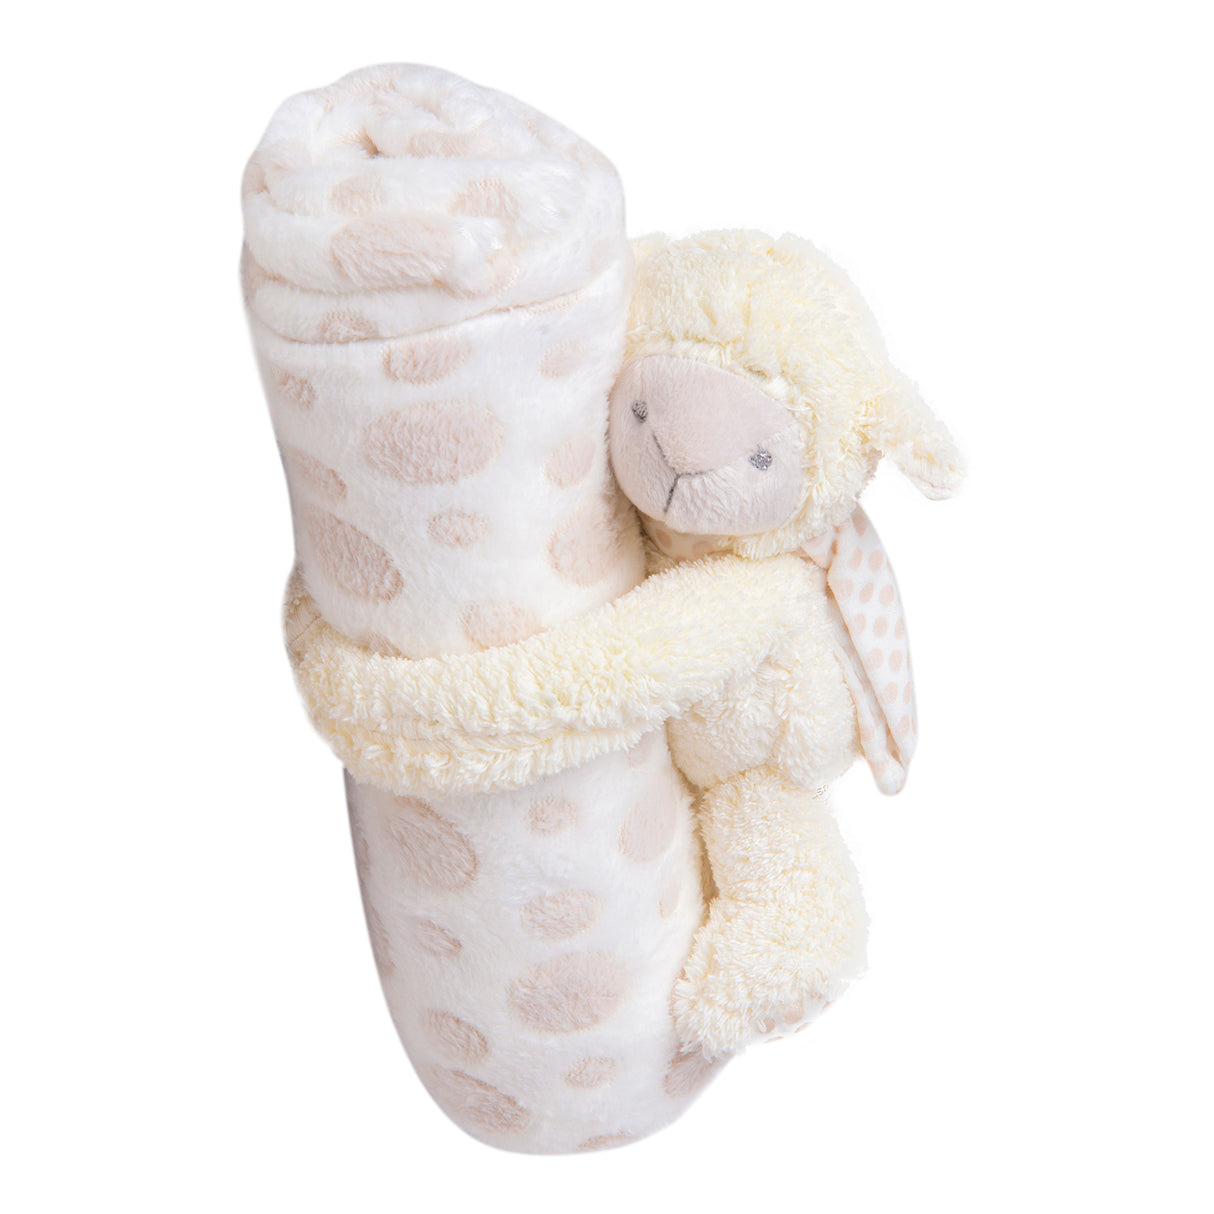 Baby Moo Soft Cozy Plush Toy Blanket